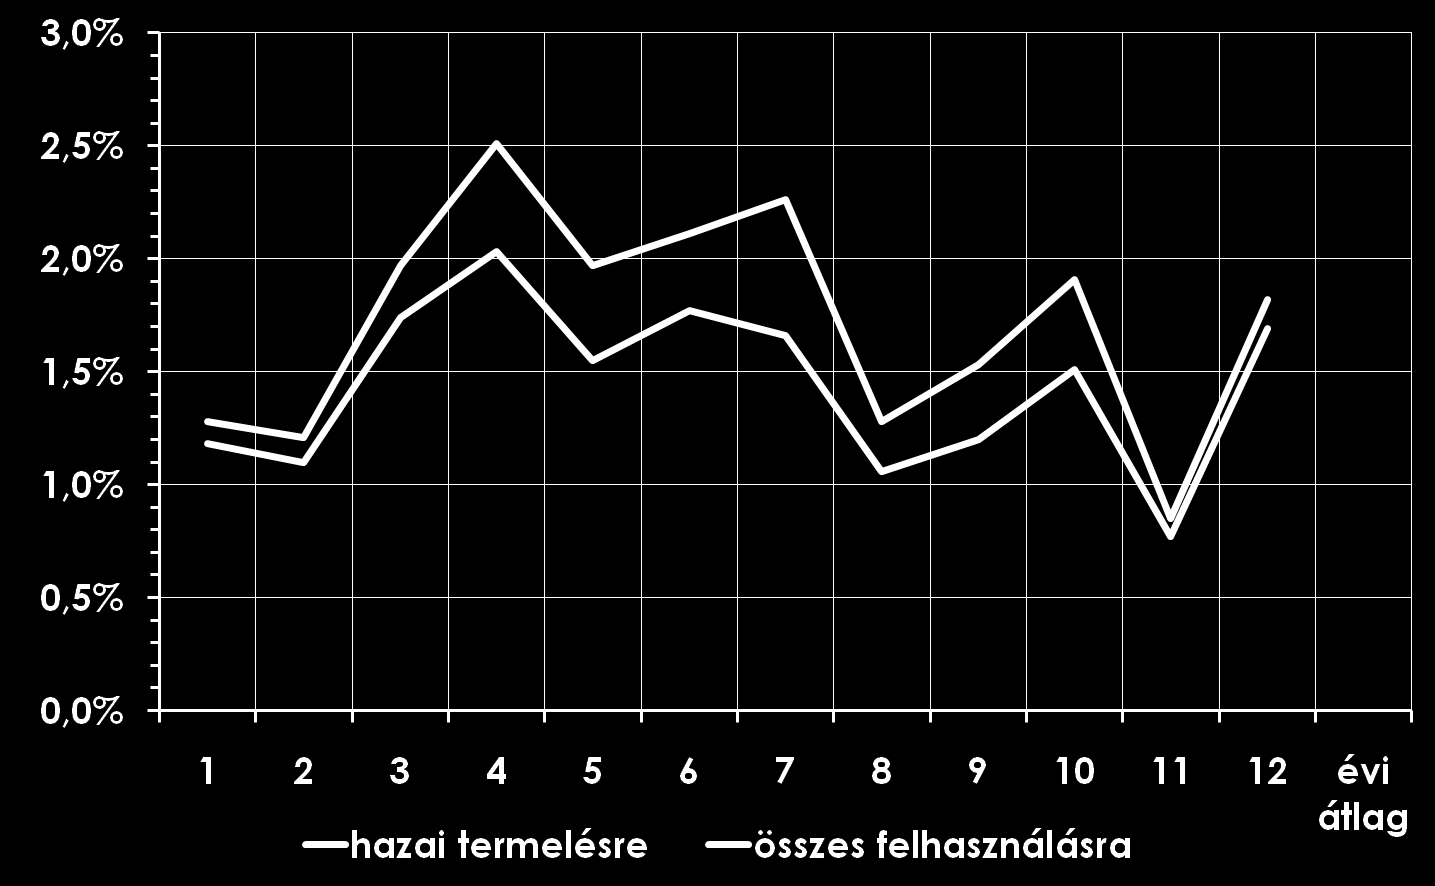 Szélerőművek termelési aránya 2011-ben